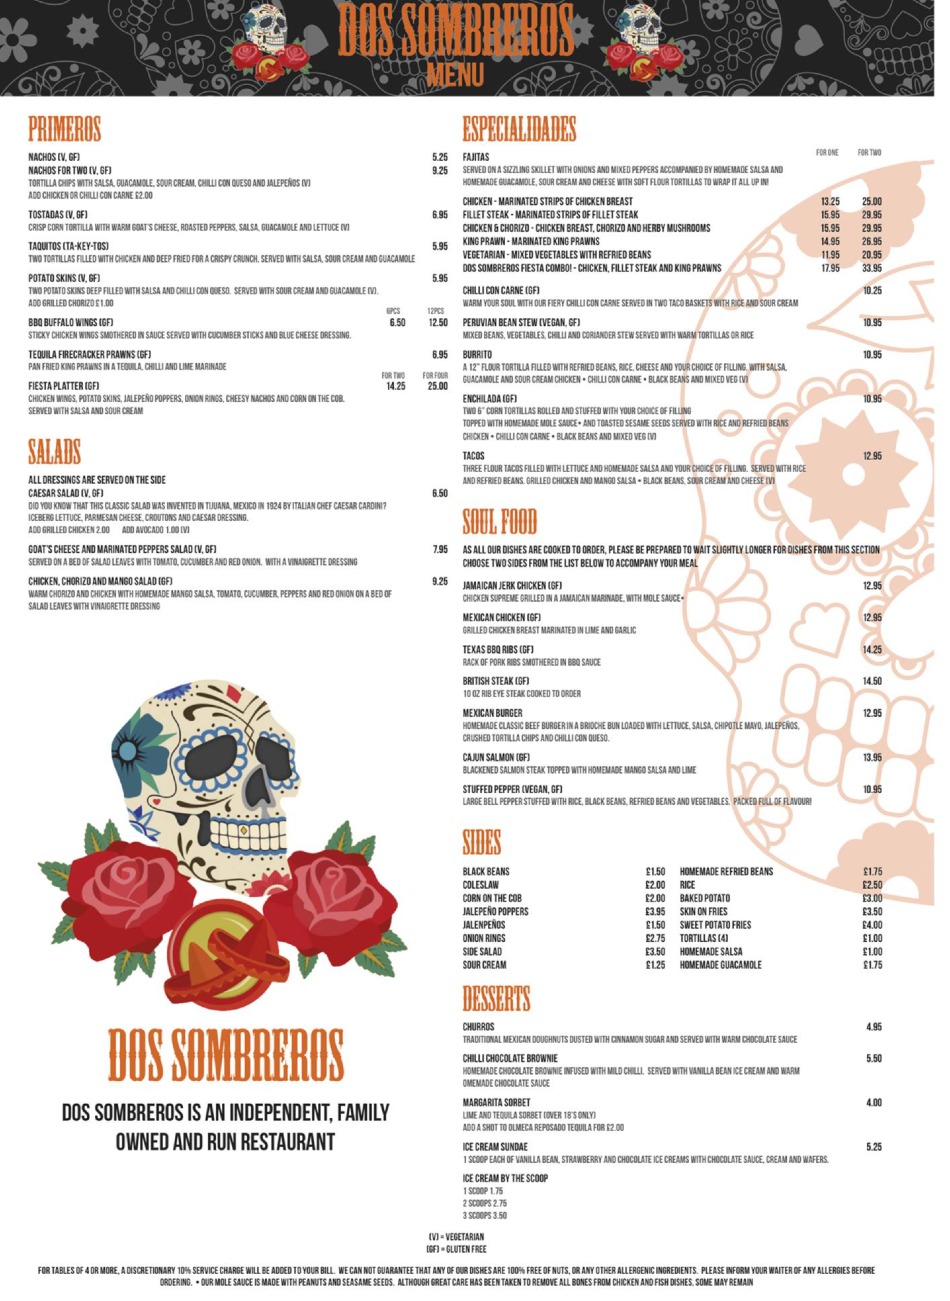 Takeaway Restaurant Menu Page - Dos Sombreros Mexican Brighton - Brighton